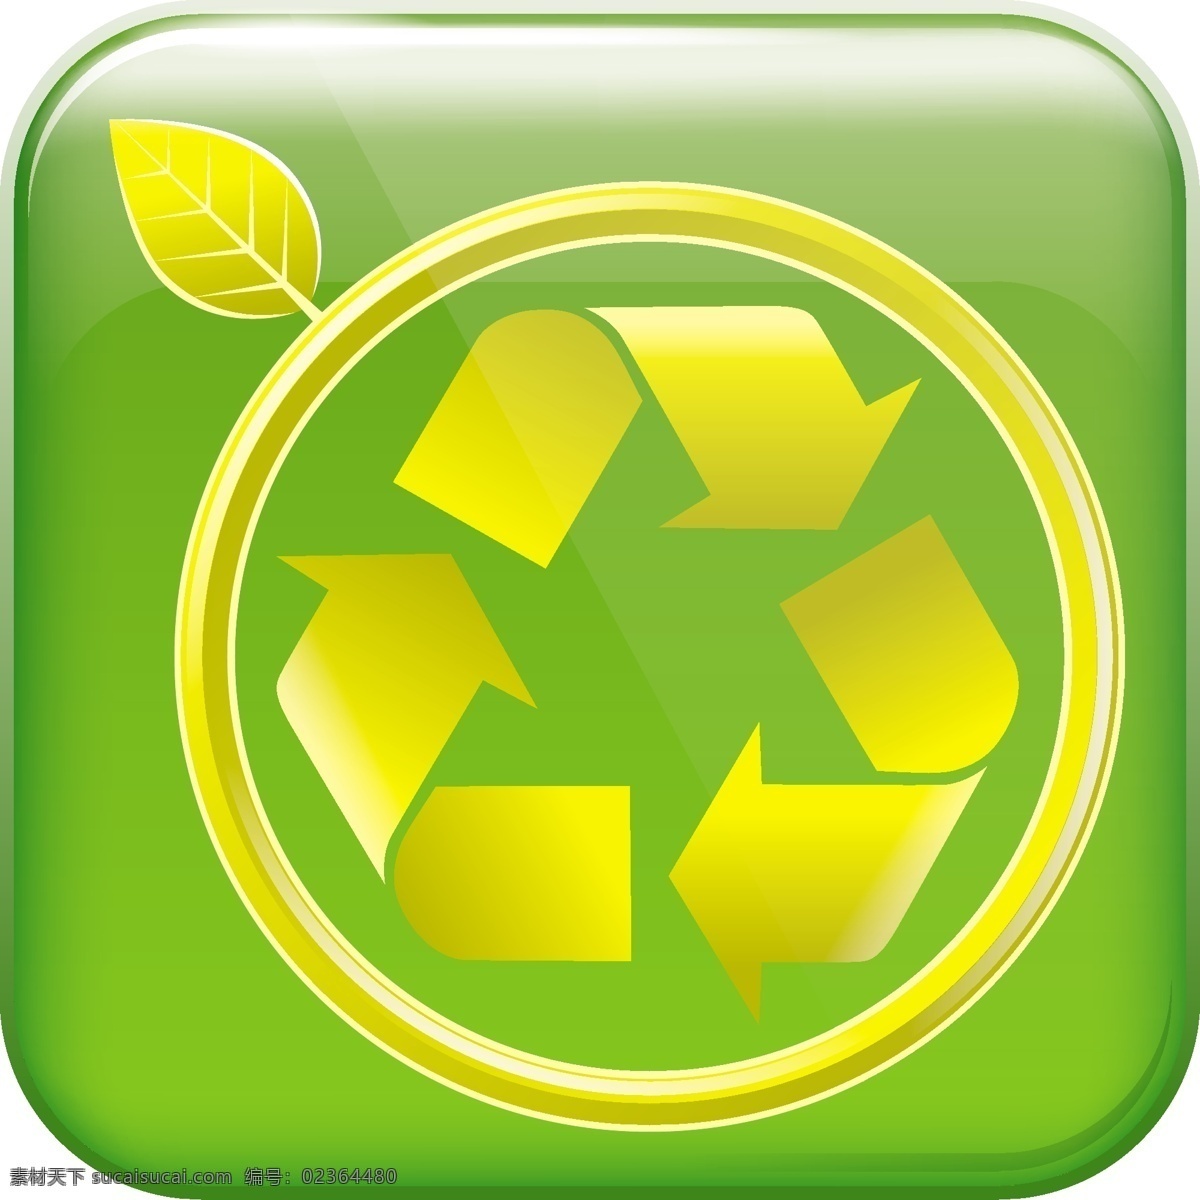 生态 环保 绿色 循环 节能 能源 箭头 绿色循环 生态环保 绿色环保 循环利用 标志设计 环保标志 矢量 矢量环保 生活百科